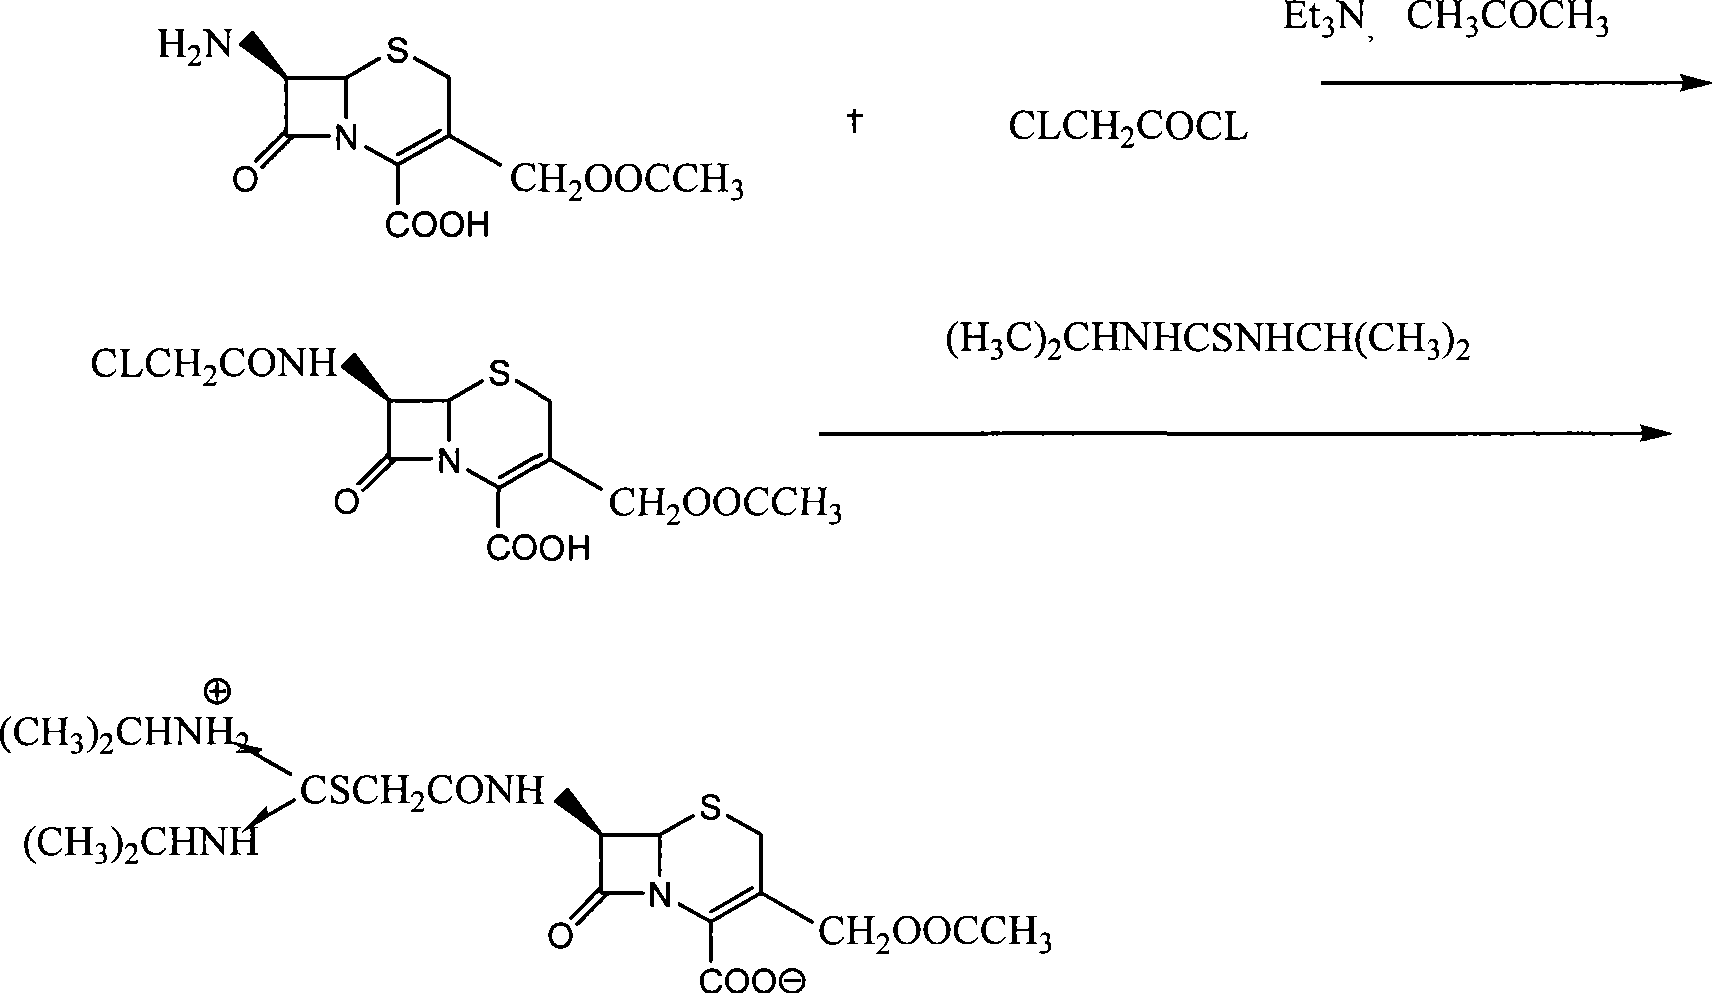 Process for preparing cefathiamidine